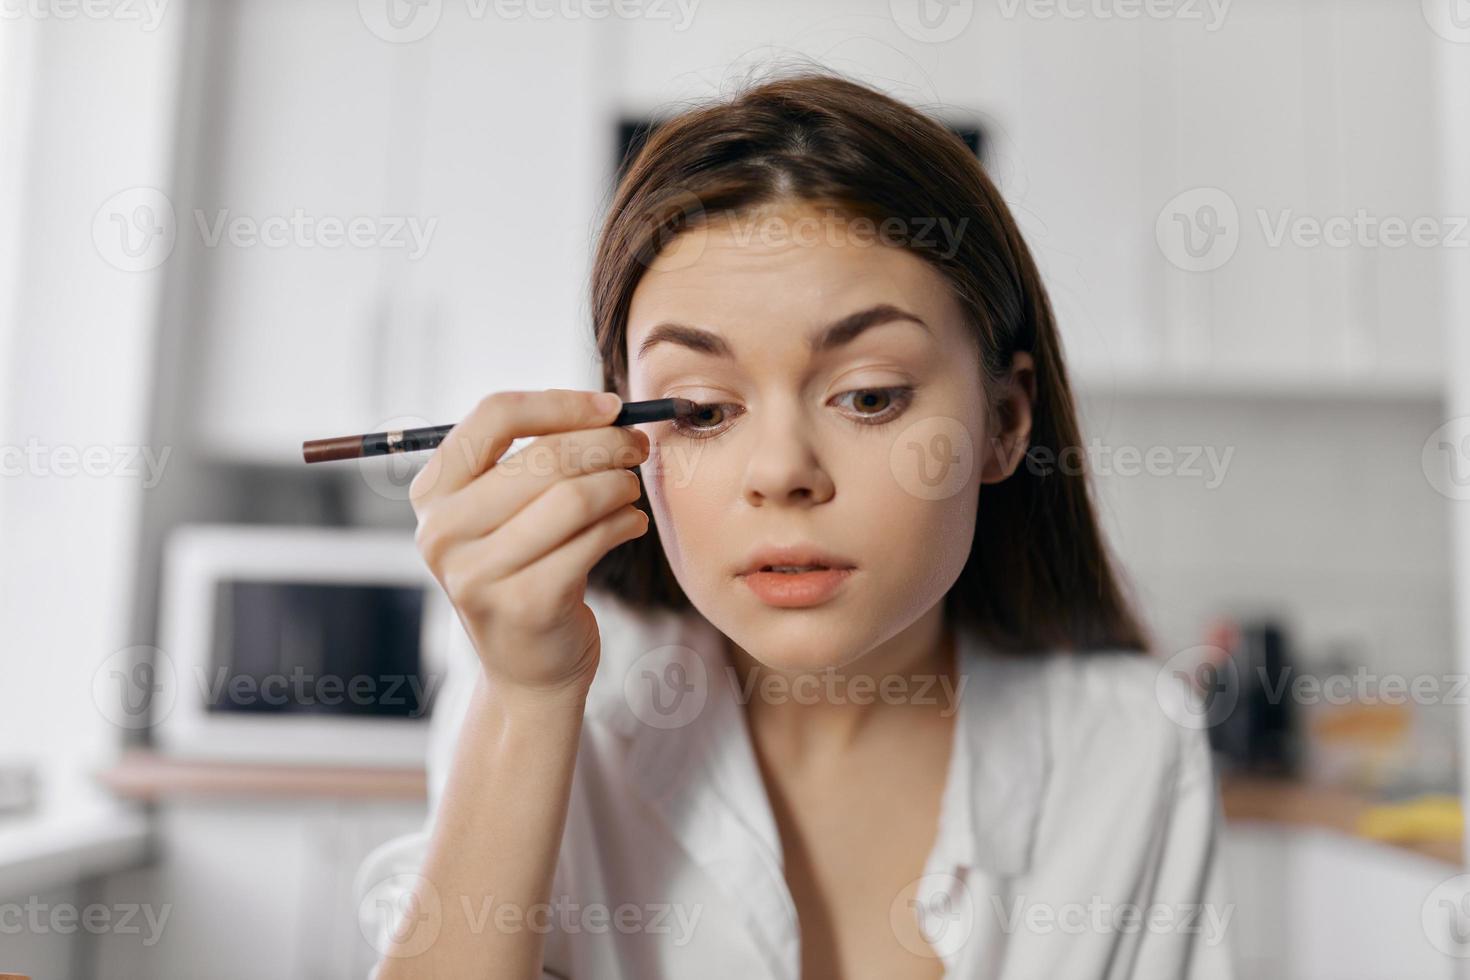 magnifique femme avec eye-liner crayon maquillage cosmétologie pièce  22058938 Photo de stock chez Vecteezy